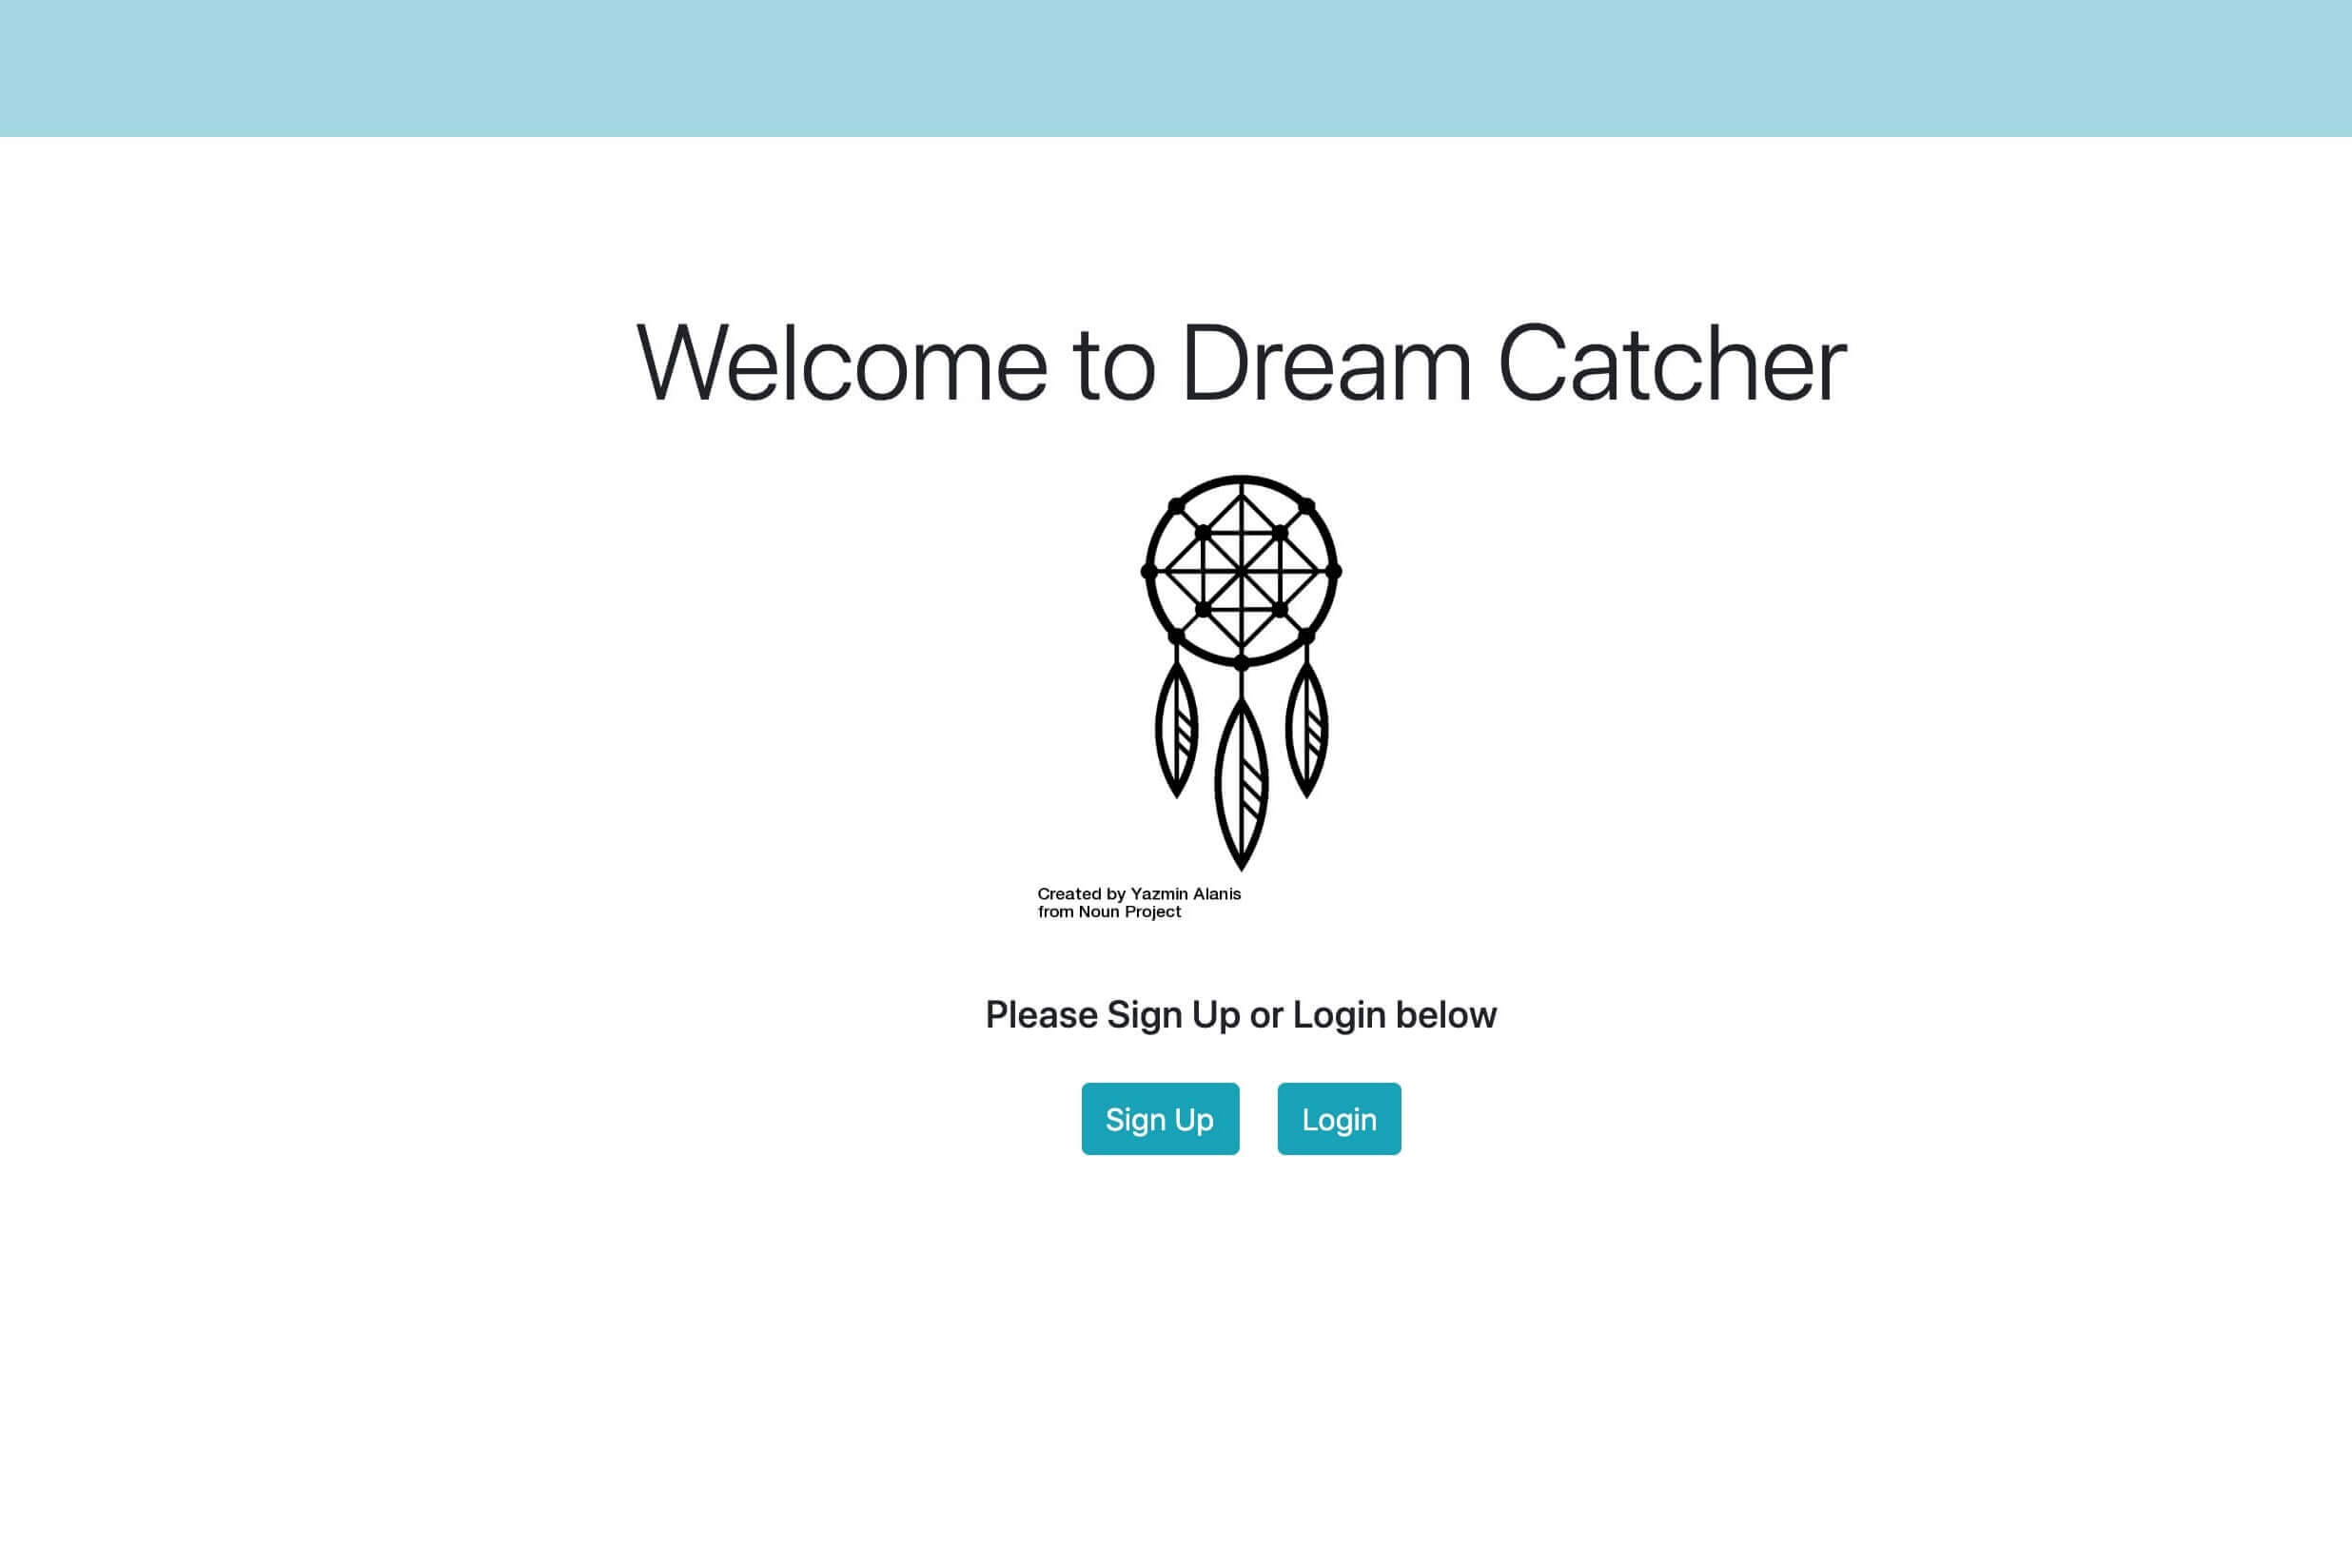 Dream Catcher signup